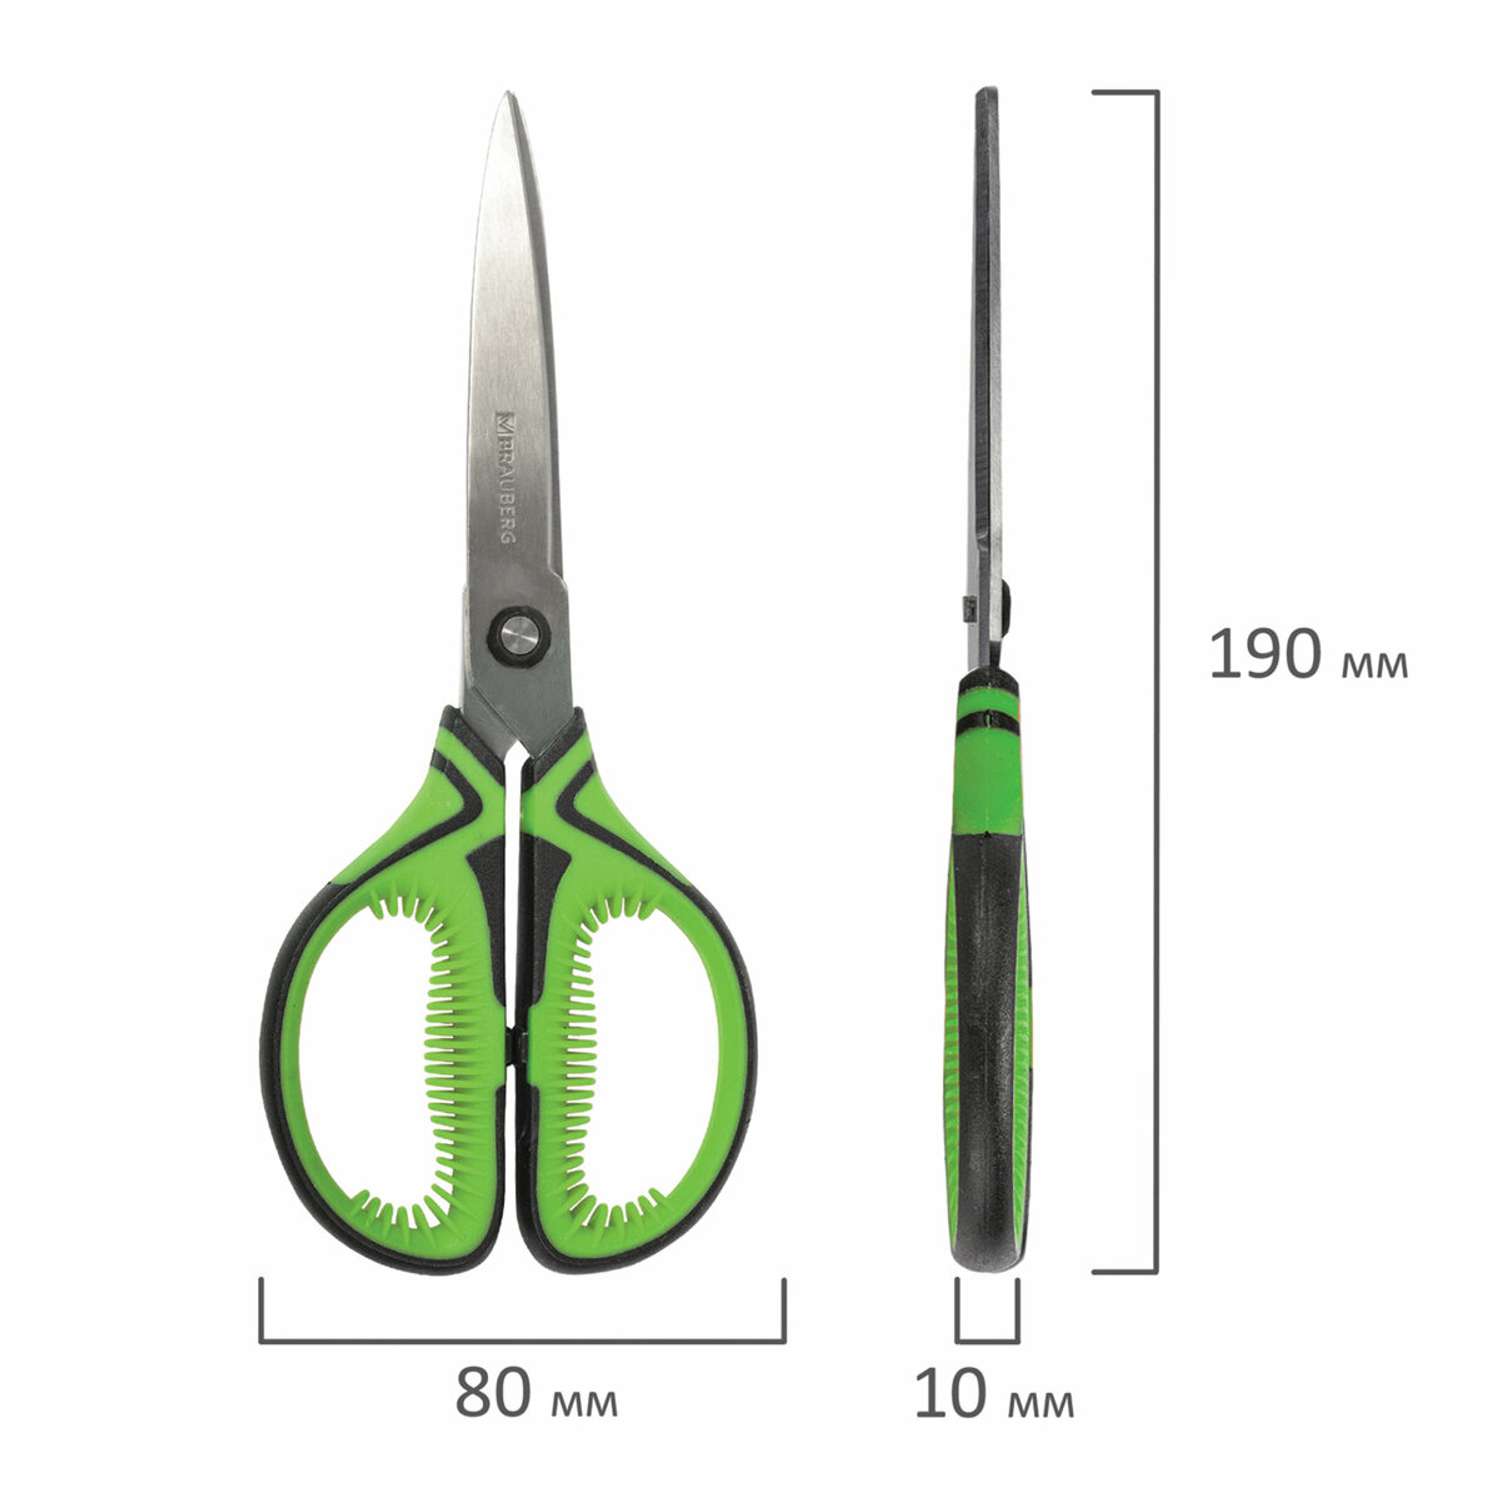 Ножницы Brauberg канцелярские универсальные для бумаги и картона зеленые 190 мм противоскользящие ручки - фото 8